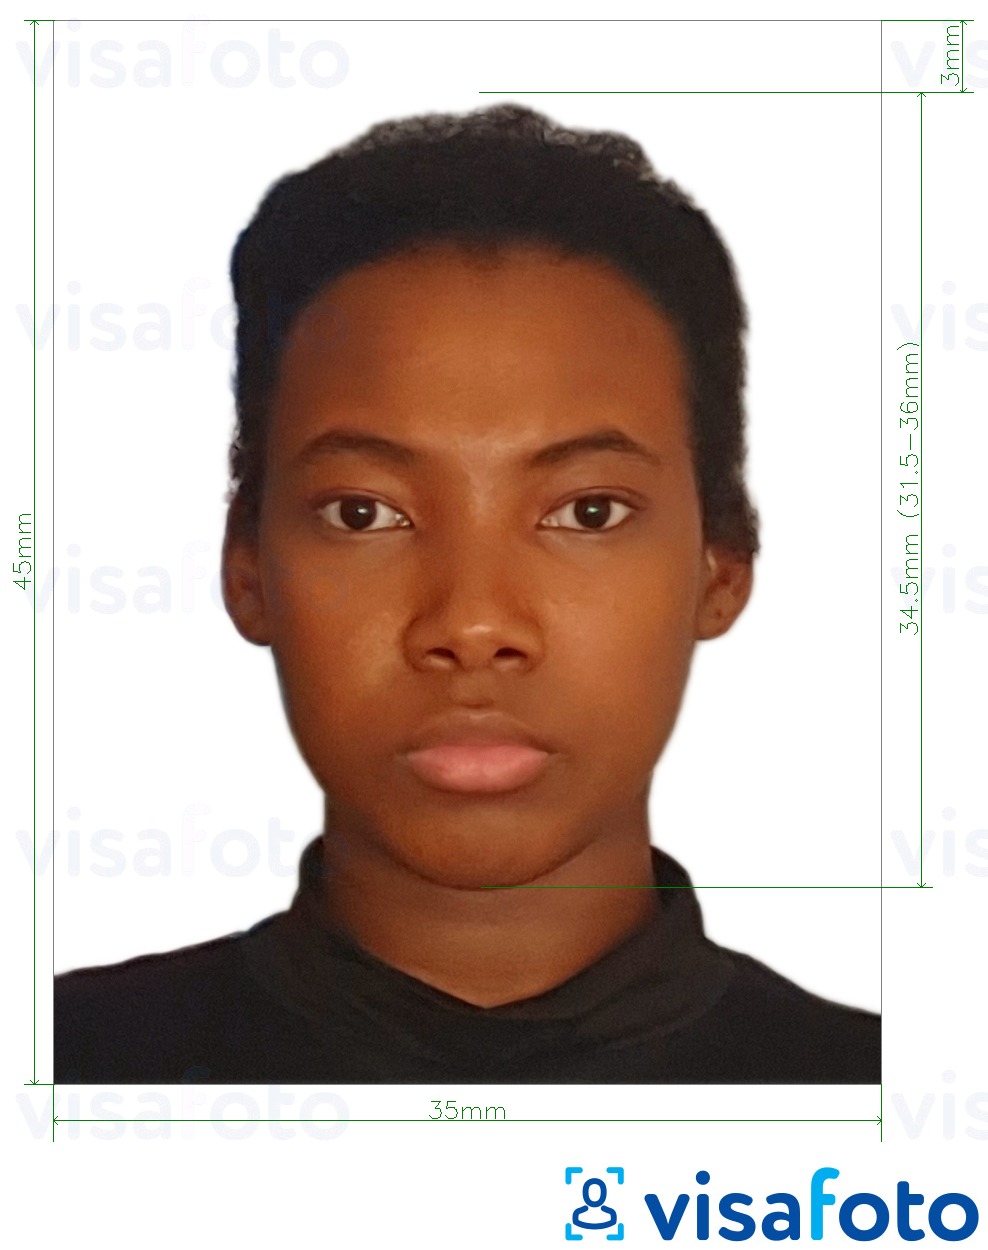 ဒီပံုရဲ့ ဥပမာ ဂါနာနိုင်ငံကူးလက်မှတ် 3.5x4.5 စင်တီမီတာ (35x45 မီလီမီတာ) အတြက္​တိက်​ေသာသတ္​မွတ္​ခ်က္​မ်ားႏွင္​့